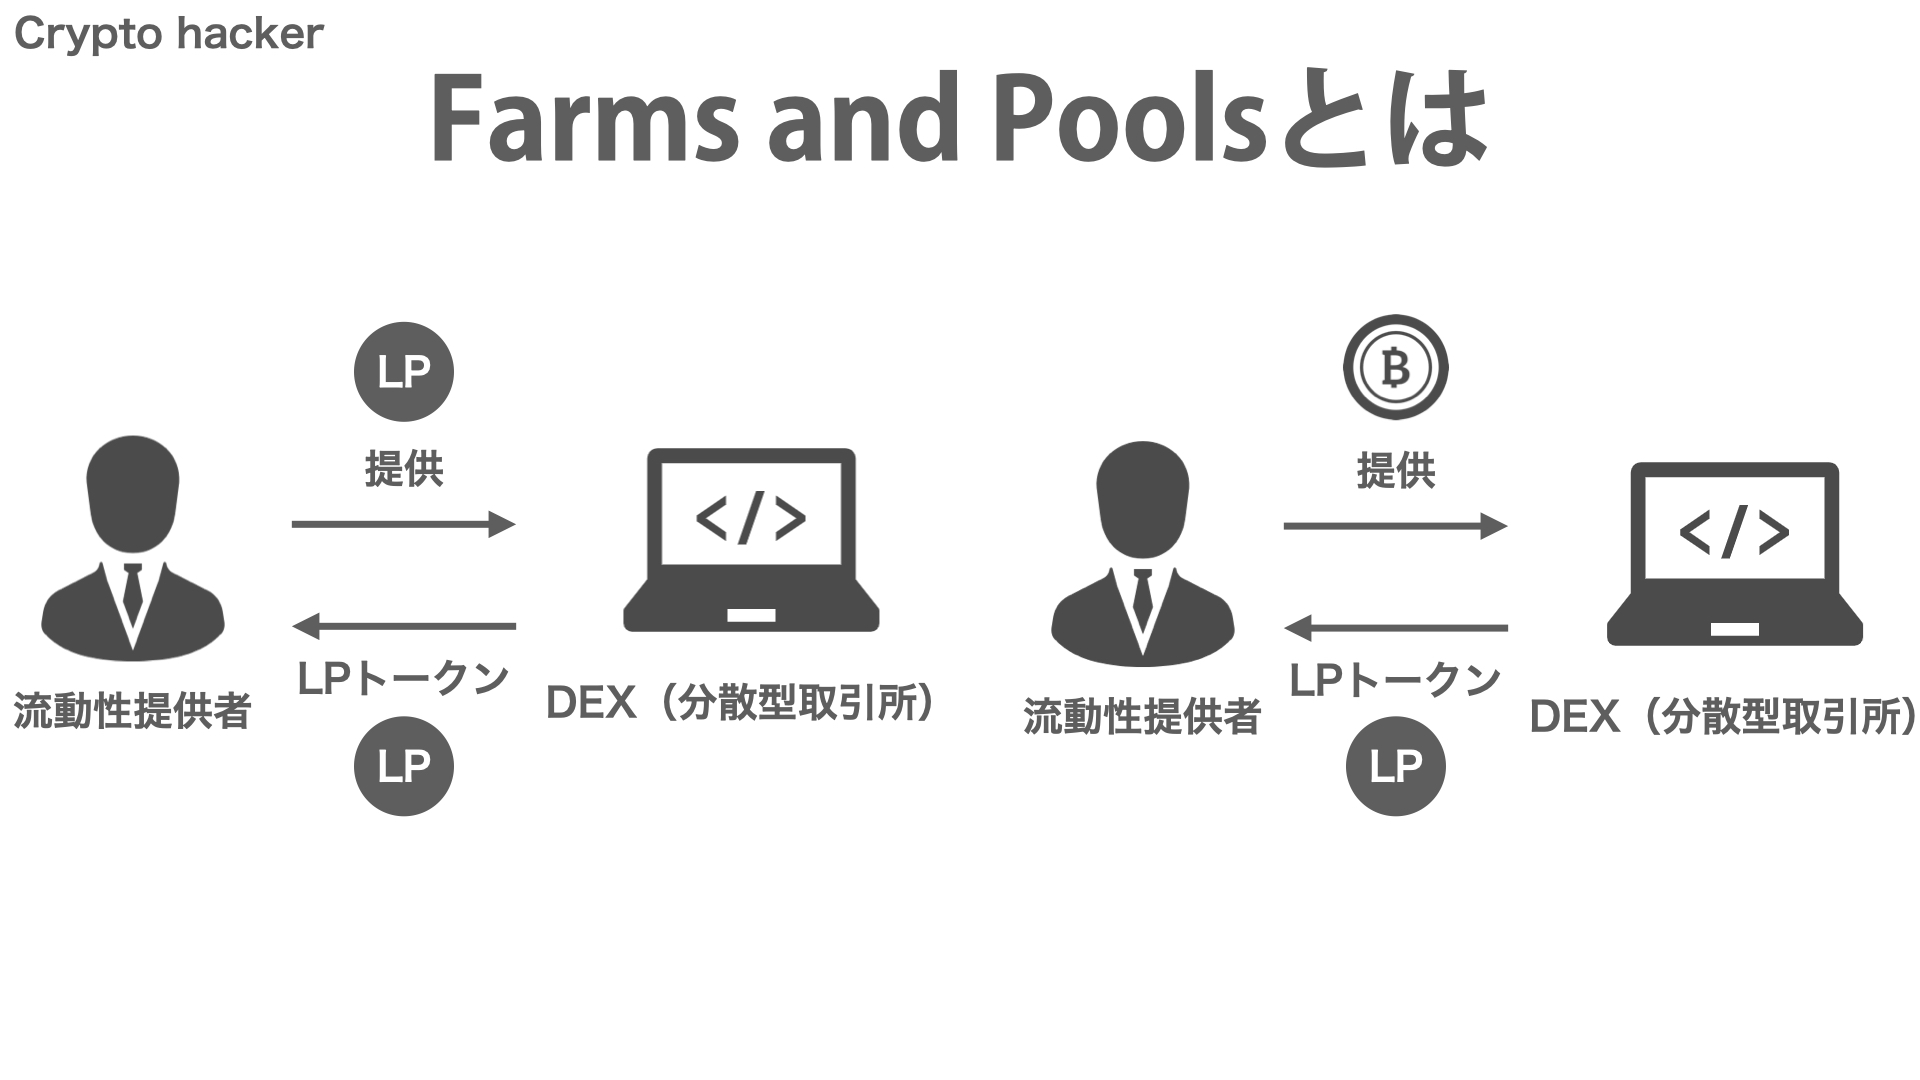 DeFi（分散型金融）　Farms and Pools